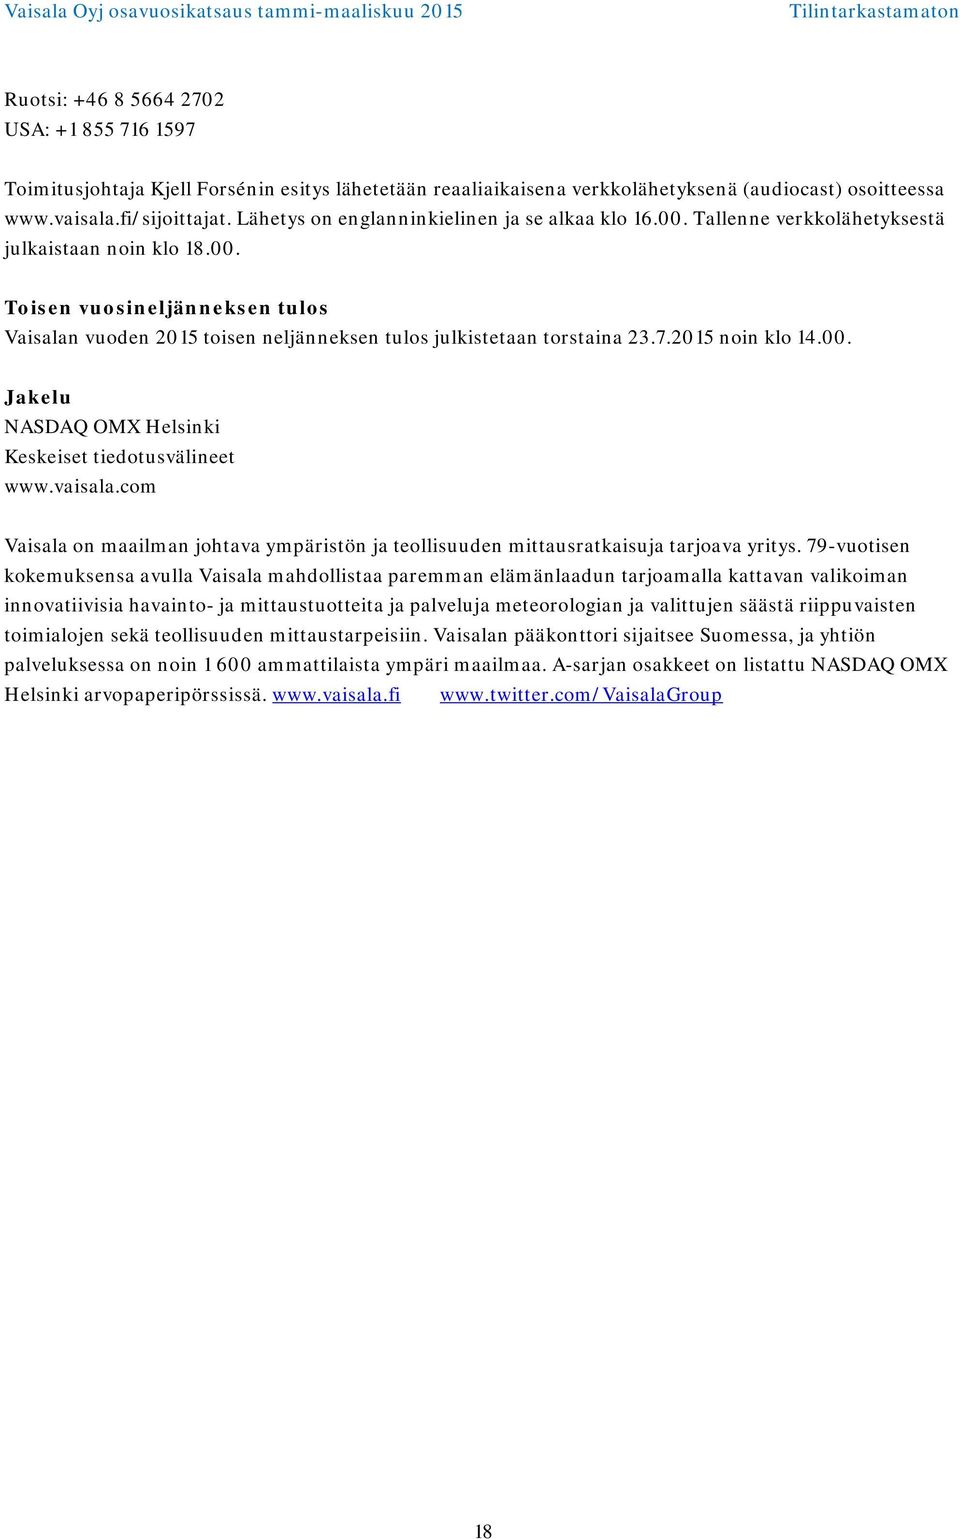 7.2015 noin klo 14.00. Jakelu NASDAQ OMX Helsinki Keskeiset tiedotusvälineet www.vaisala.com Vaisala on maailman johtava ympäristön ja teollisuuden mittausratkaisuja tarjoava yritys.